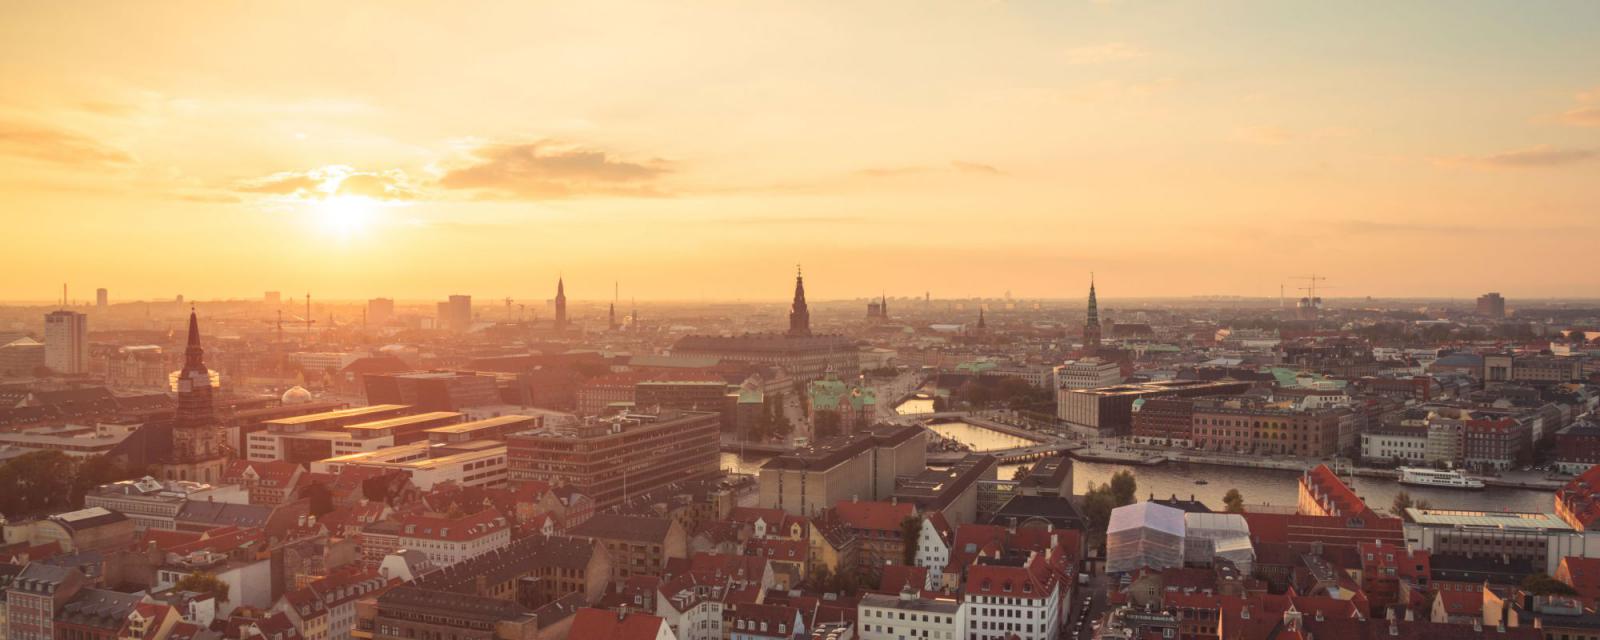 Gezapt: Kopenhagen | informatie voor jouw stedentrip 